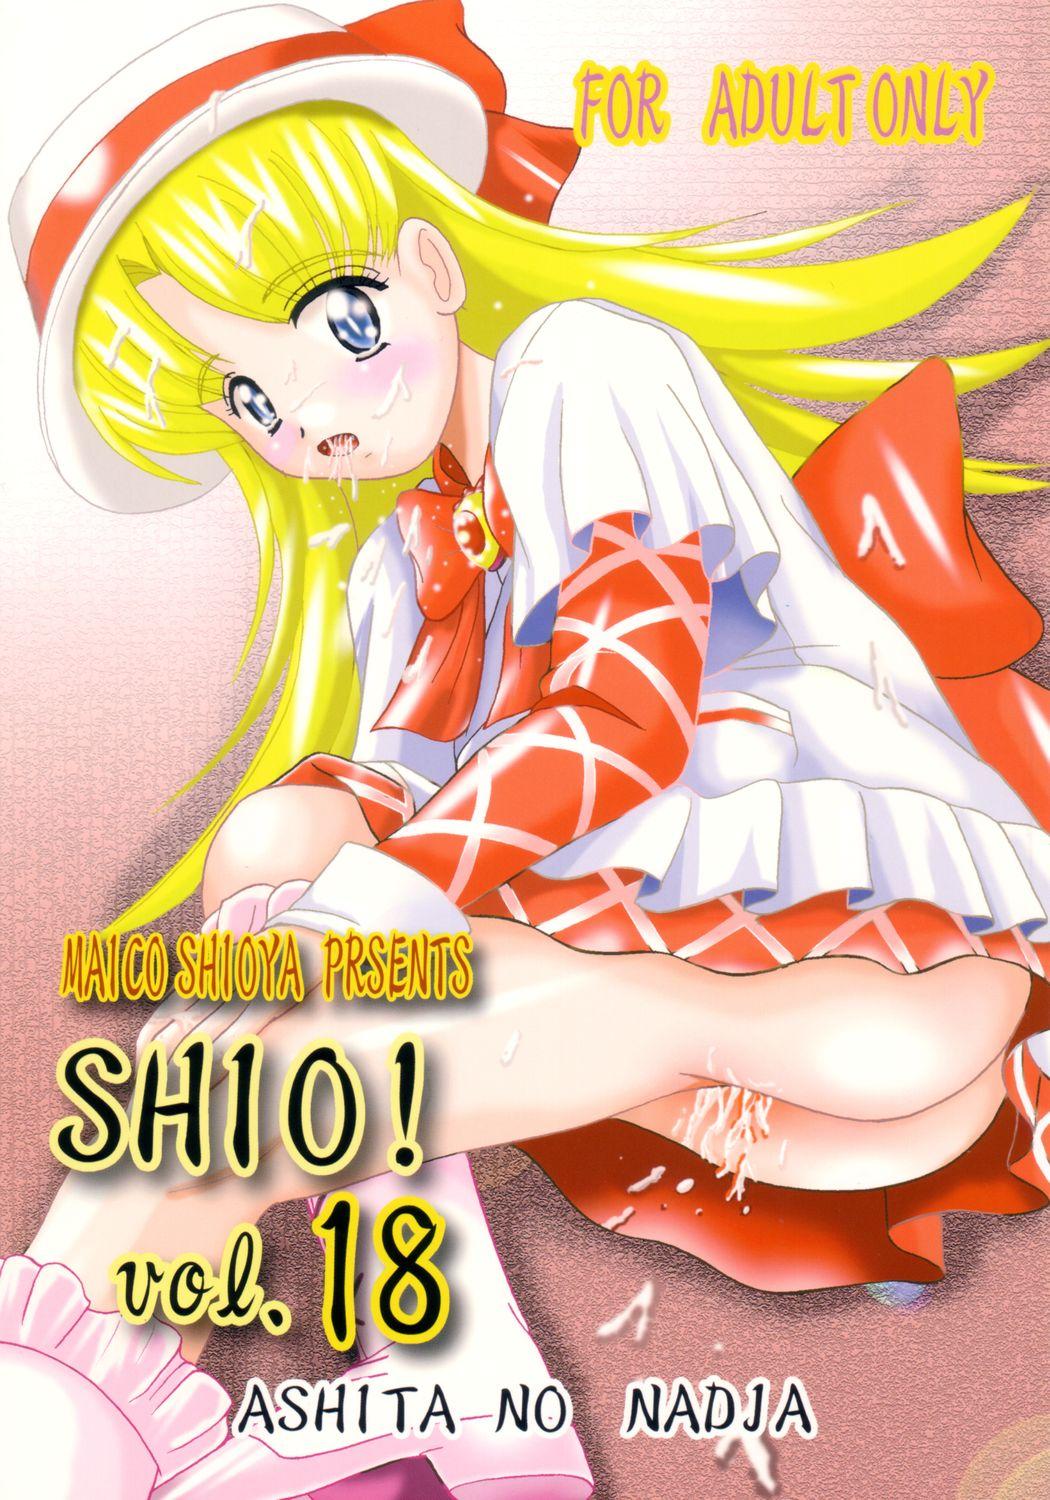 SHIO! Vol.18 0